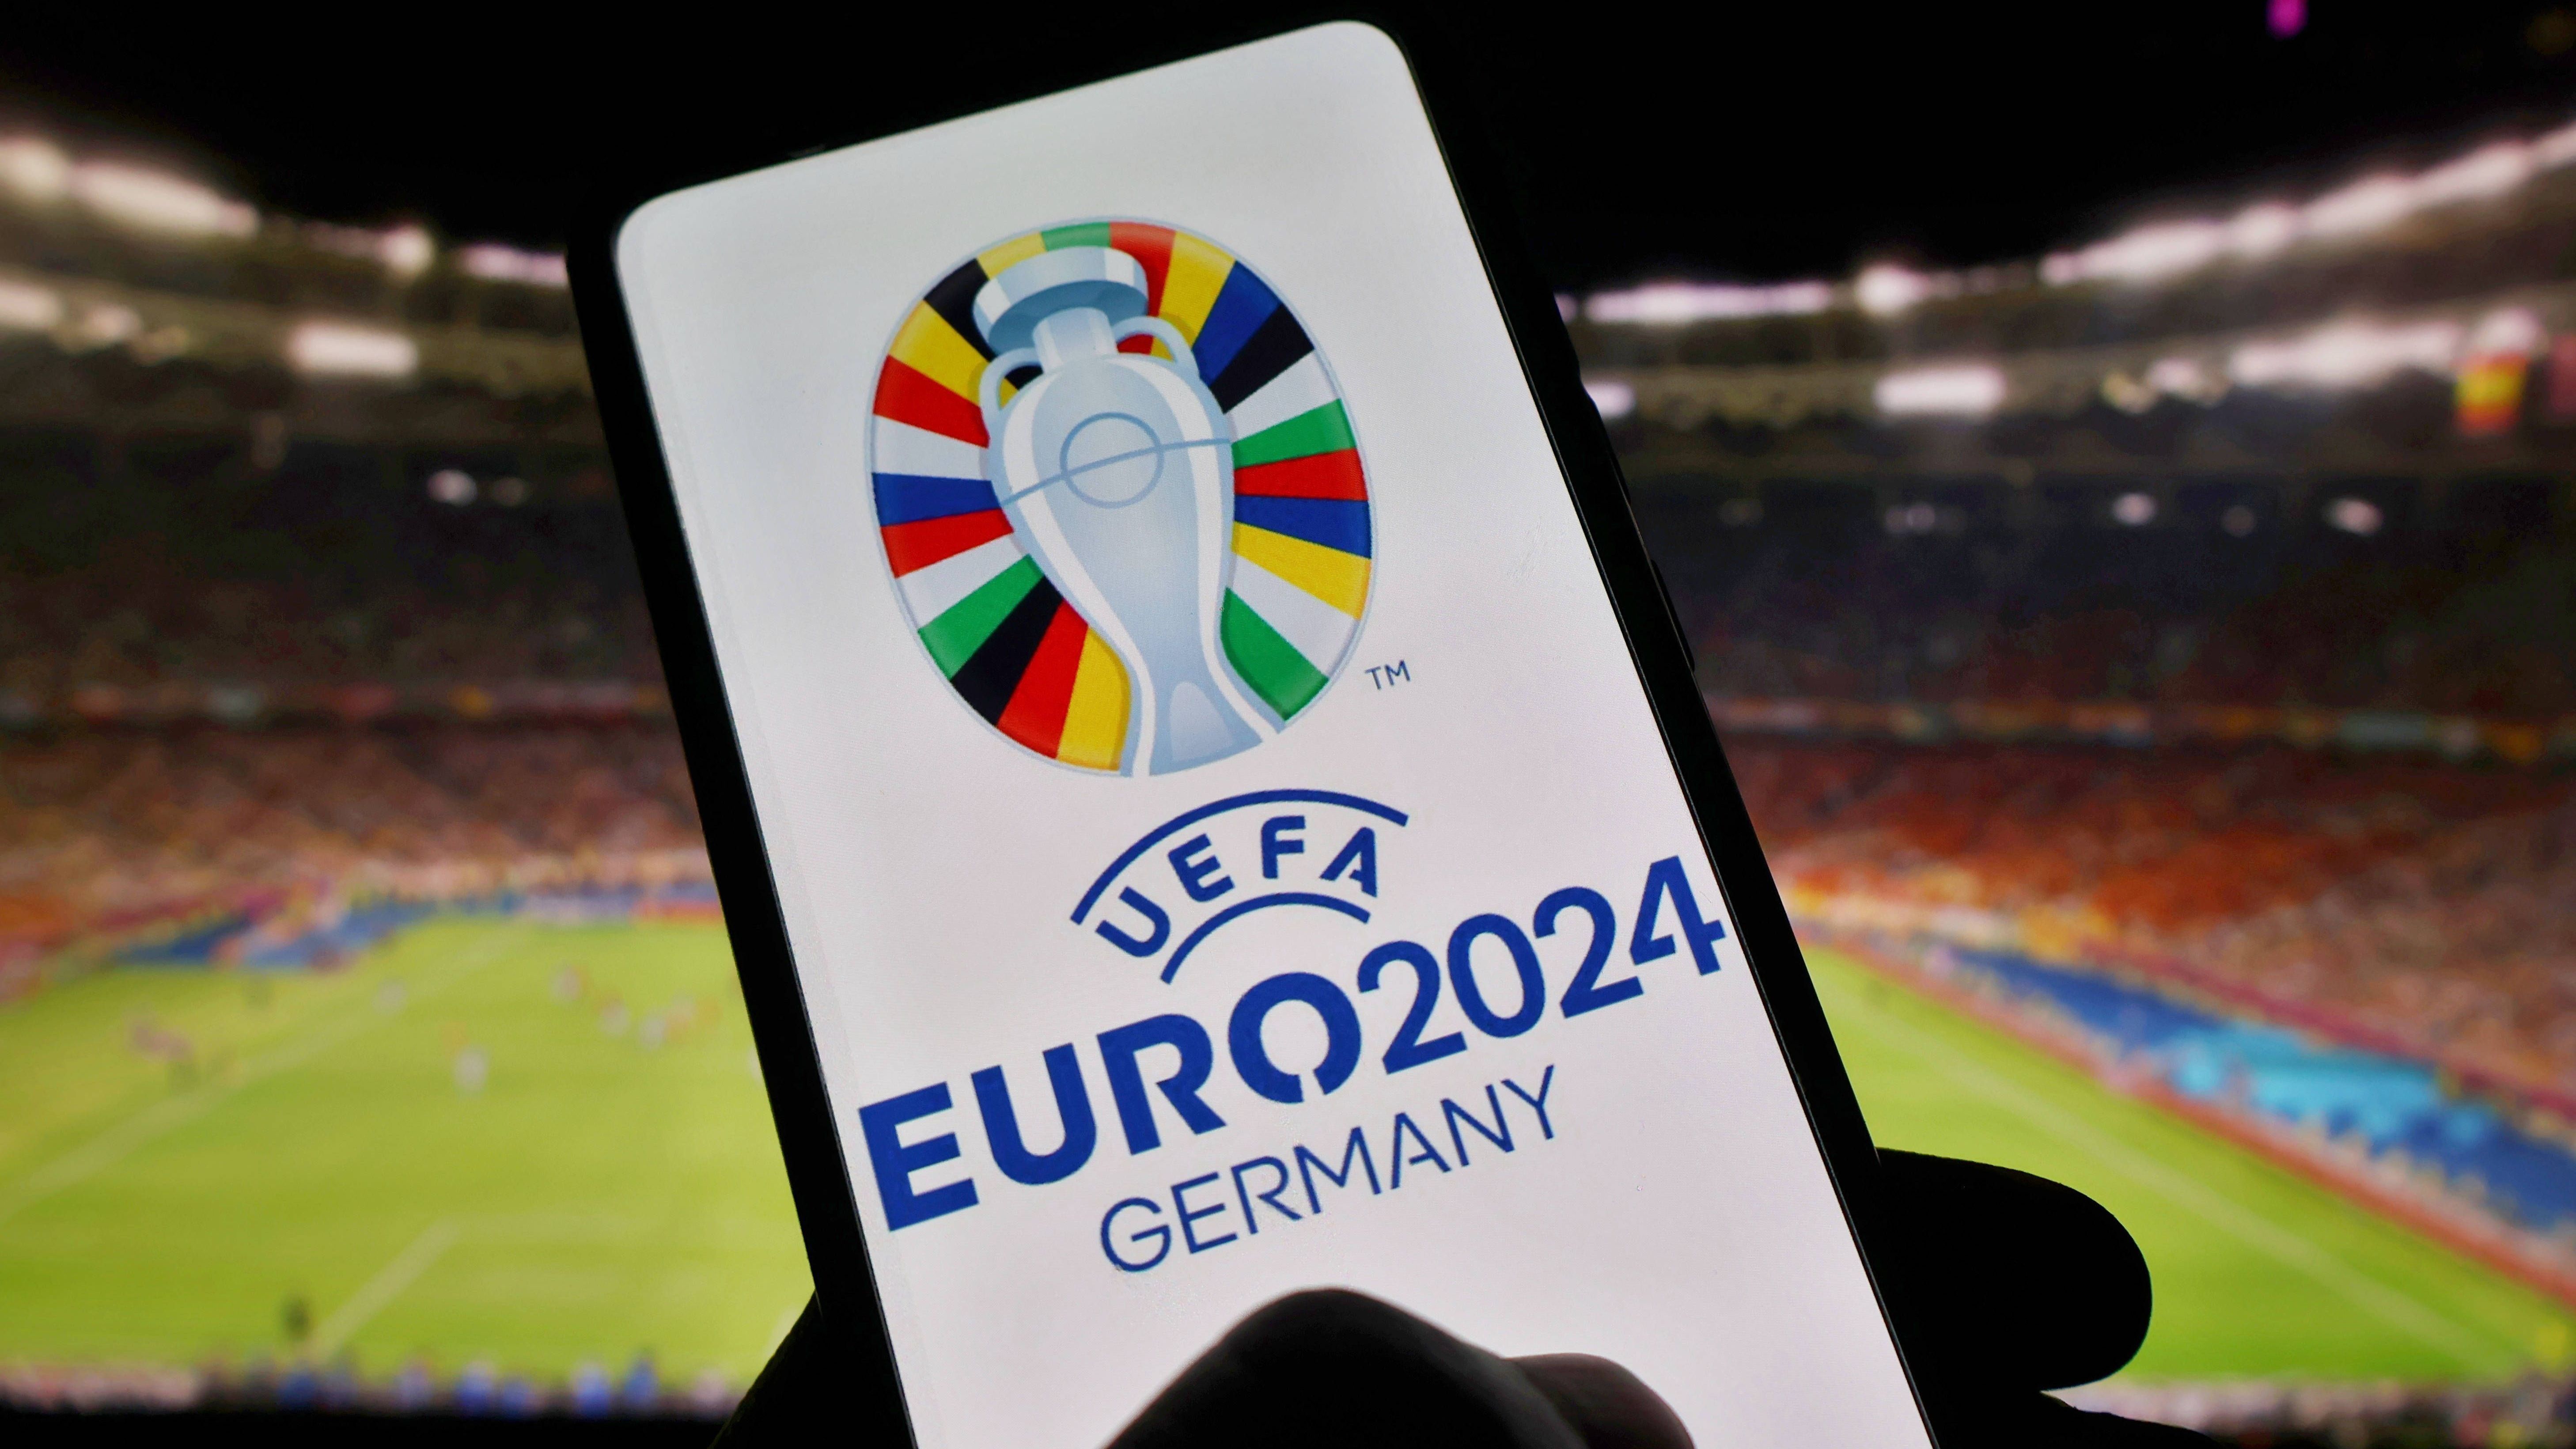 <strong>Die Gruppen der Fußball-EM 2024</strong><br>Vom 14. Juni bis zum 14. Juli 2024 steigt in Deutschland die Fußball-Europameisterschaft. Nach der Auslosung der einzelnen Gruppen stehen die Gegner der deutschen Nationalmannschaft fest. <strong><em>ran</em></strong> zeigt die sechs EM-Gruppen und ihre Teilnehmer.